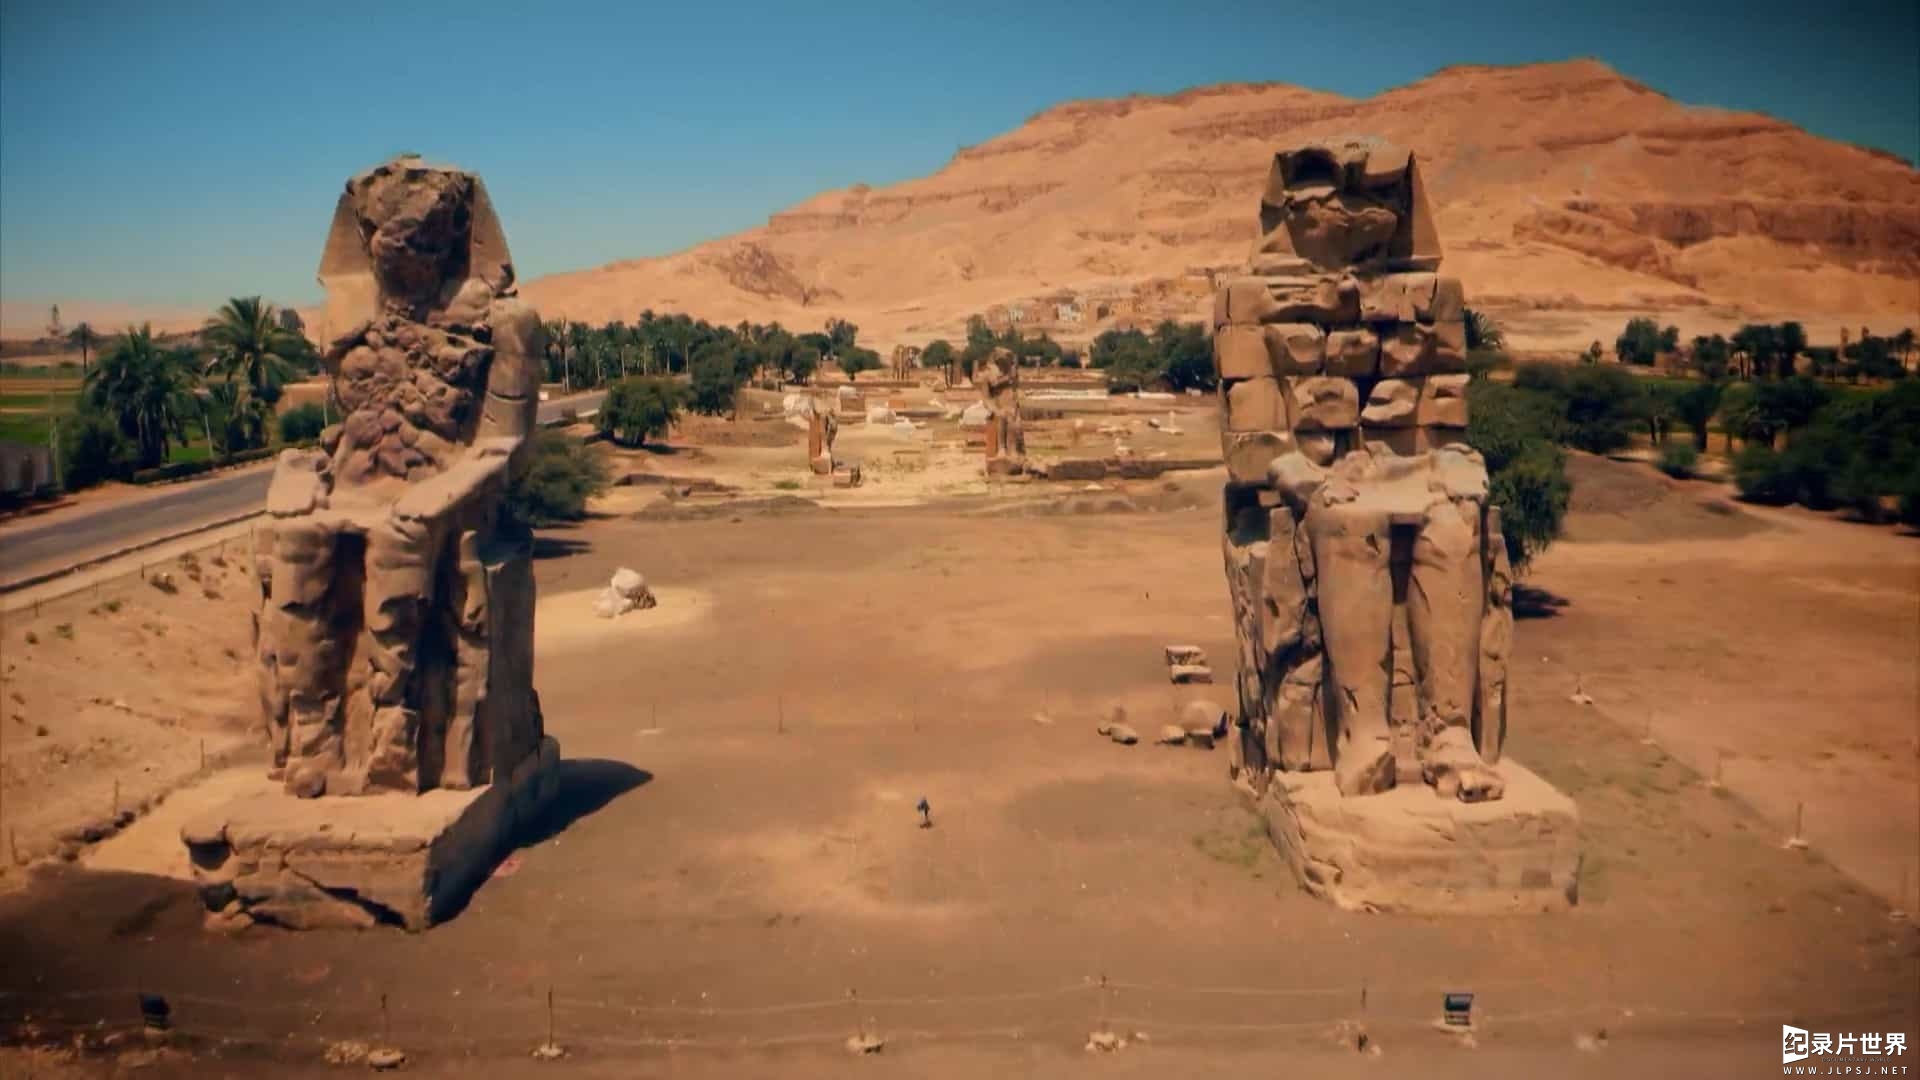 国家地理/埃及考古新发现纪录片《失落的埃及瑰宝/埃及失落宝藏 Lost Treasures of Egypt 2019》第一季全5集